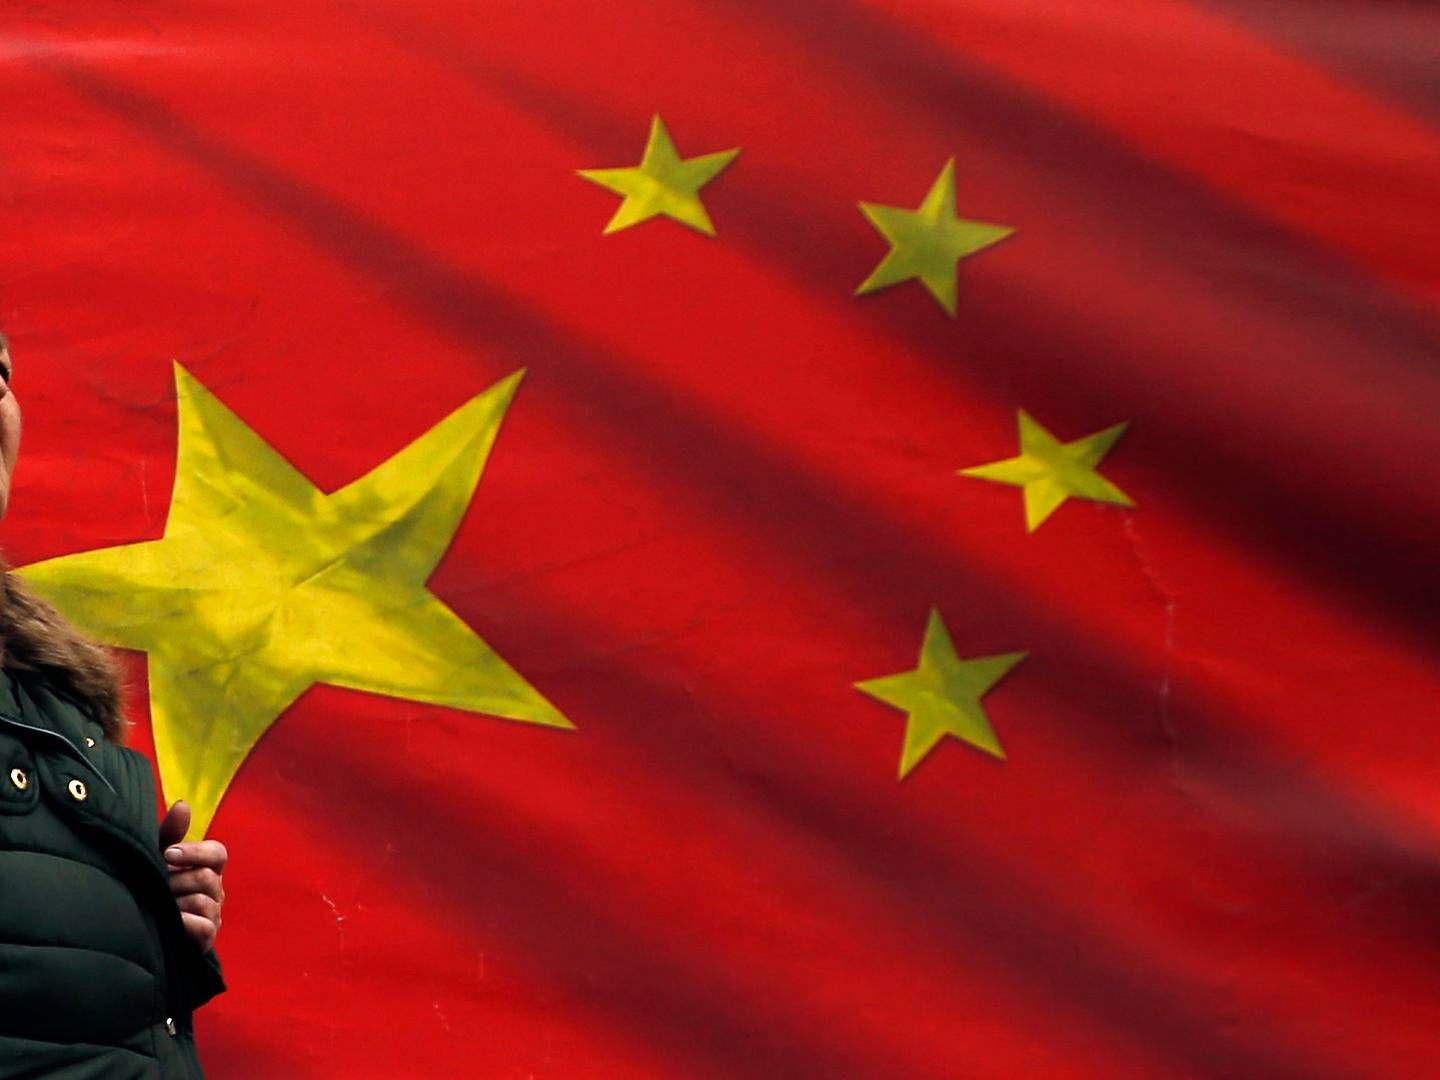 En kvinde passerer et kinesisk flagpå gaden i Beograd. Kinesiske investeringer stiger, særligt i central- og østeuropæiske lande, og EU betegner nu Kina som en "systemisk rival", men der er intet reelt overblik over de kinesiske investeringer i Europa. | Foto: Darko Vojinovic/AP/Ritzau Scanpix